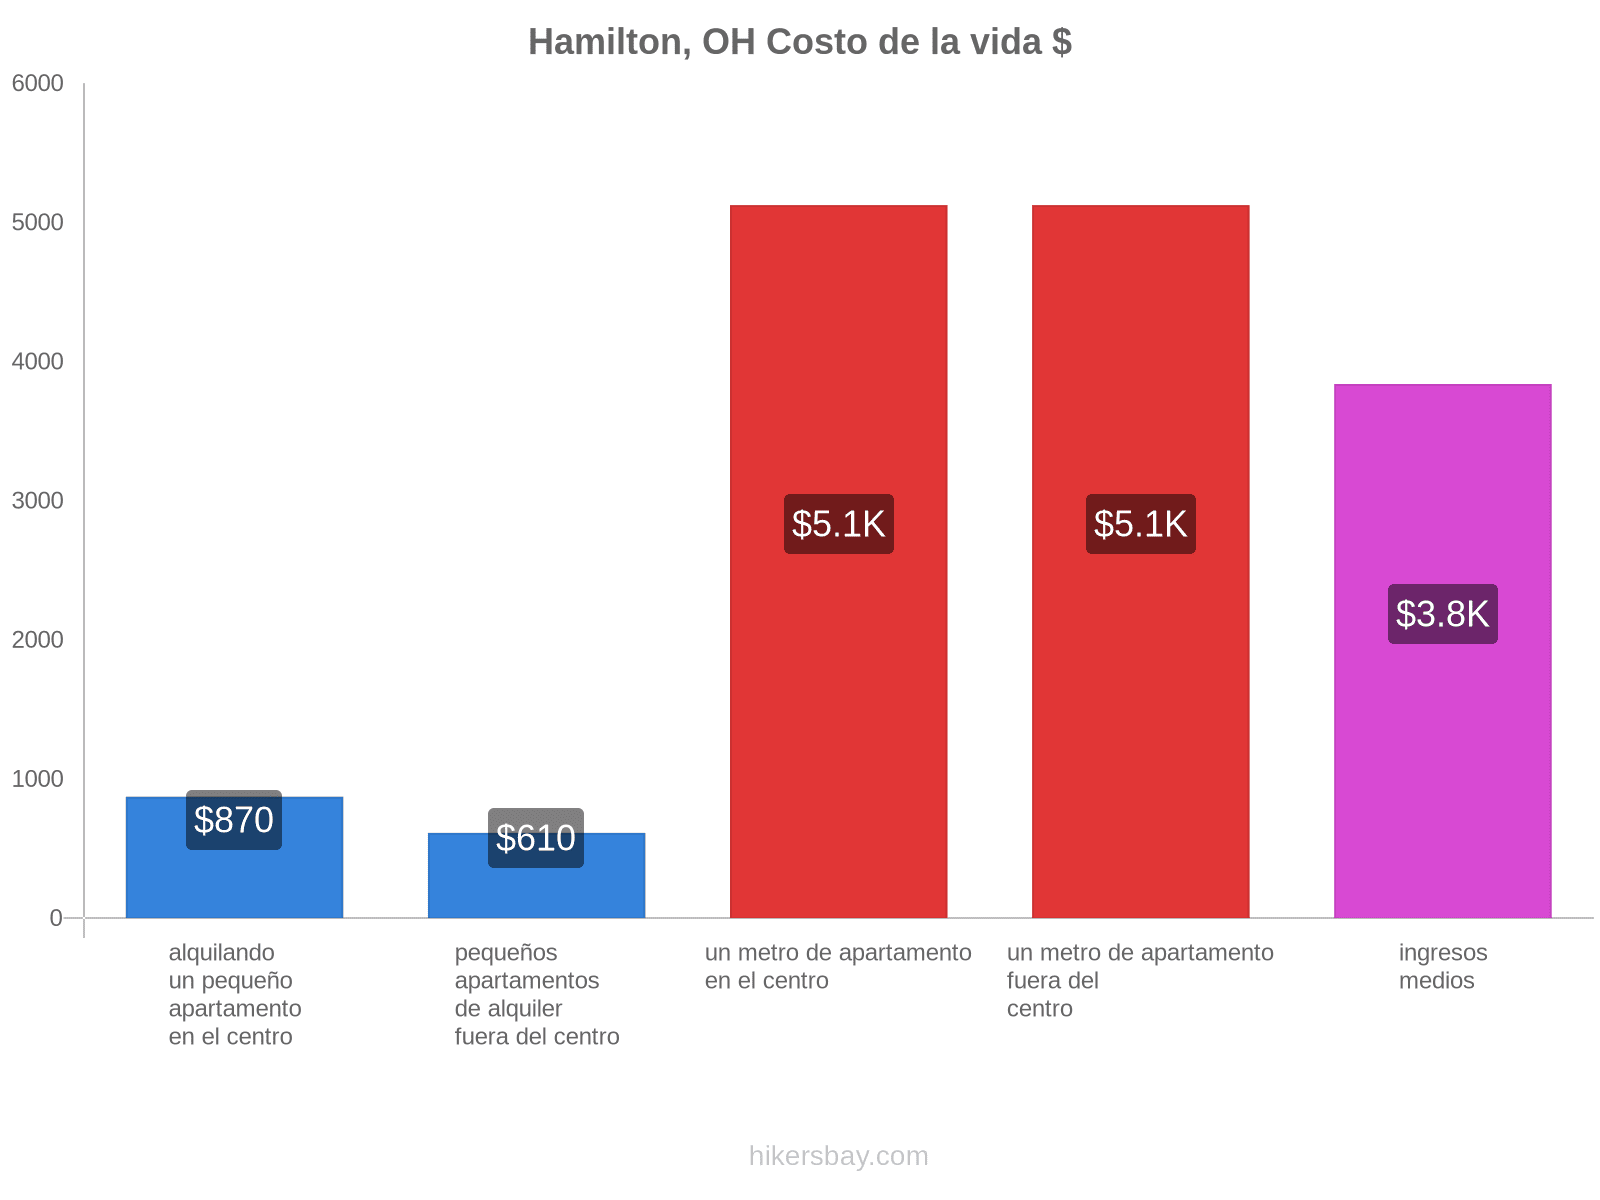 Hamilton, OH costo de la vida hikersbay.com